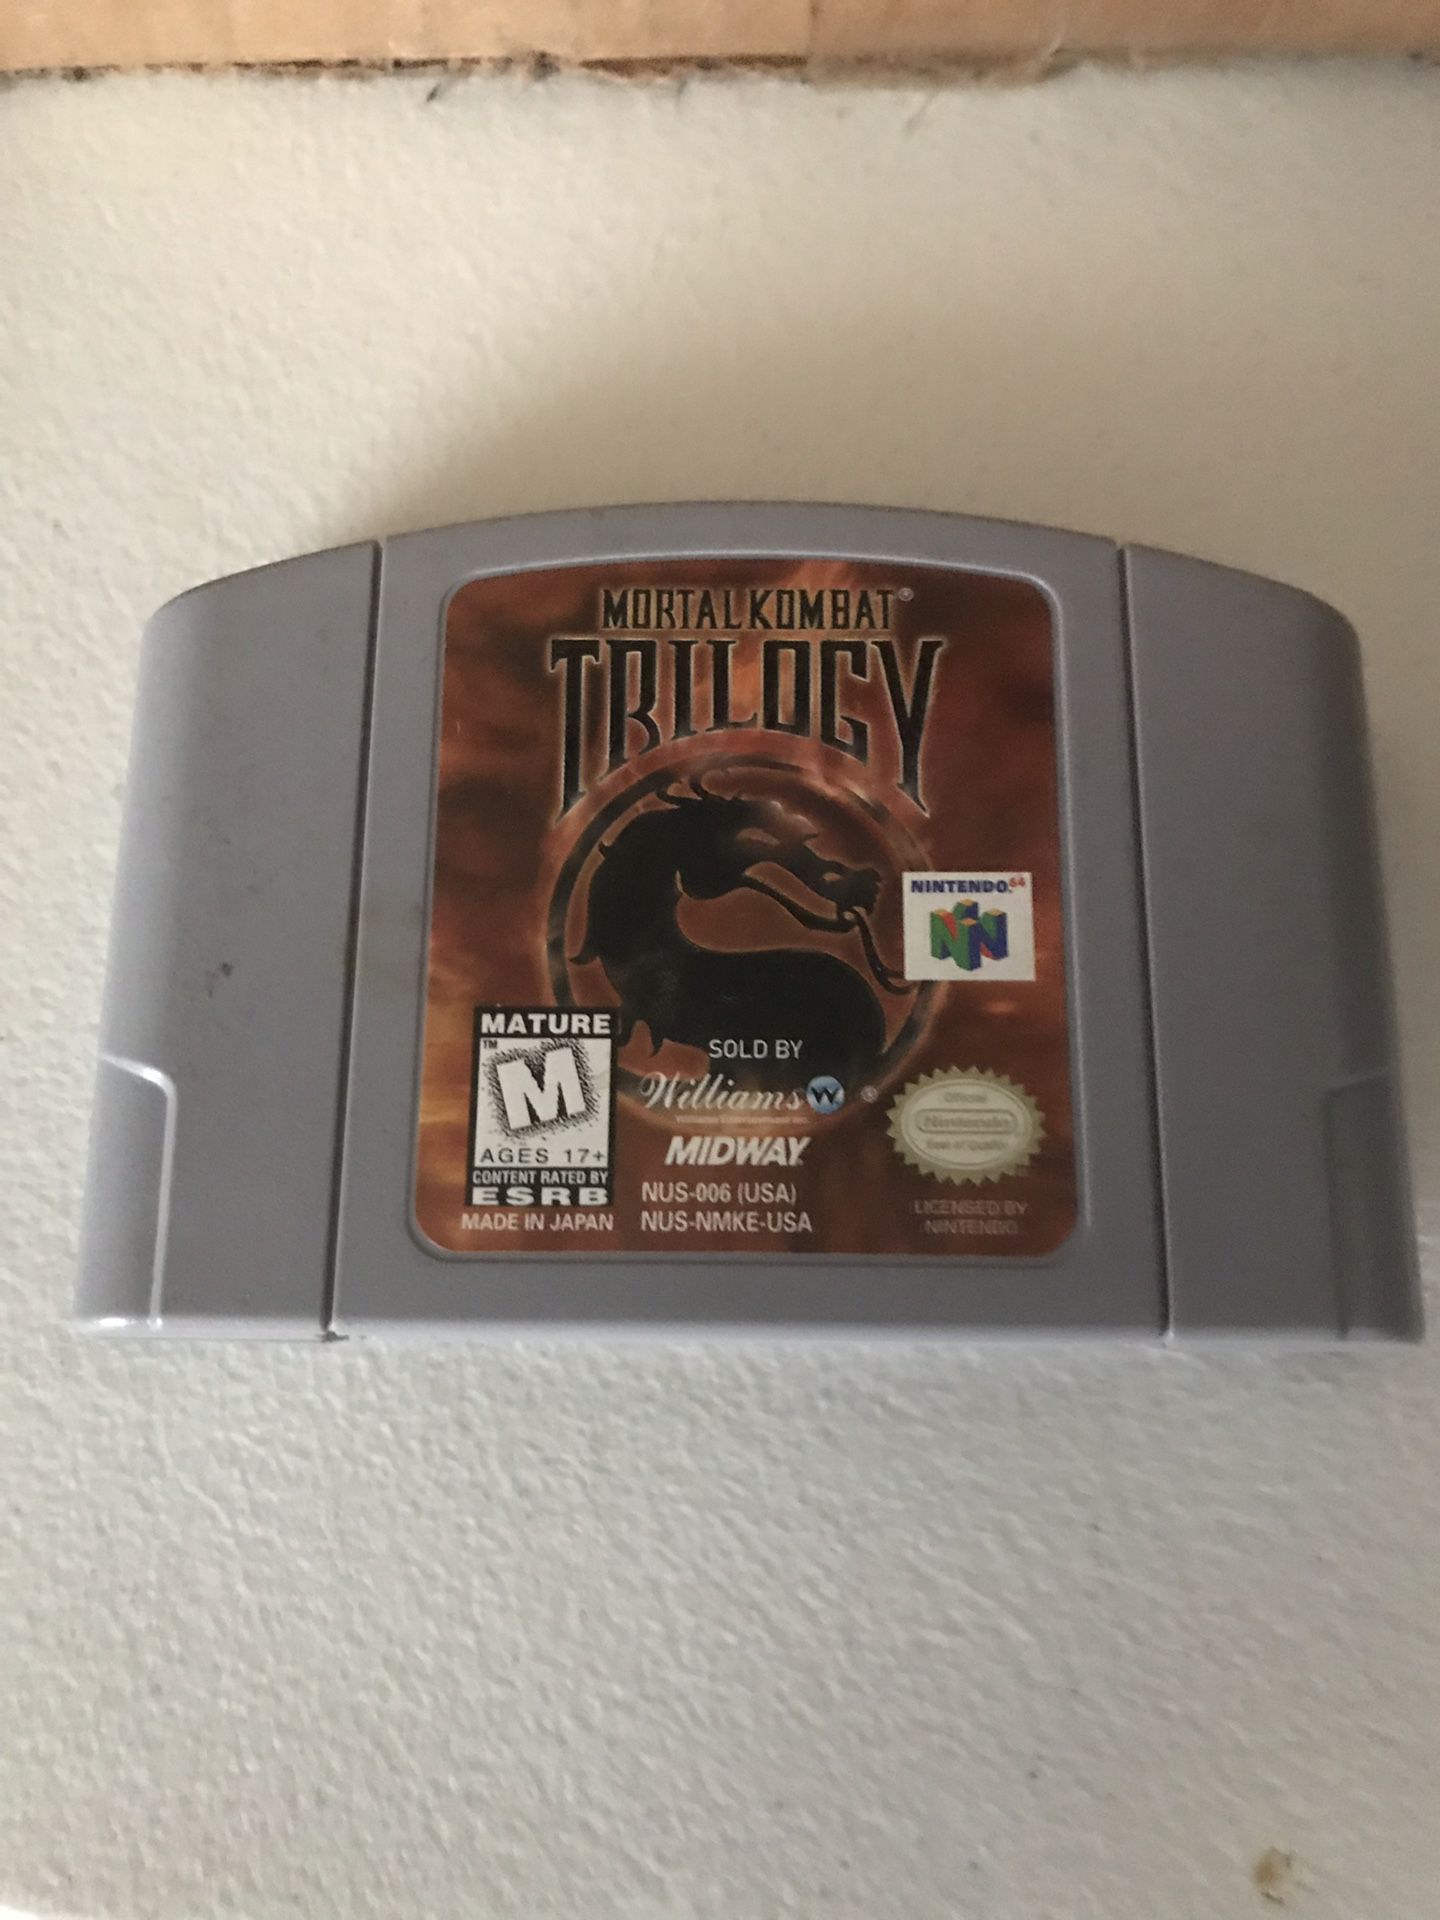 Mortal kombat trilogy Nintendo 64 game